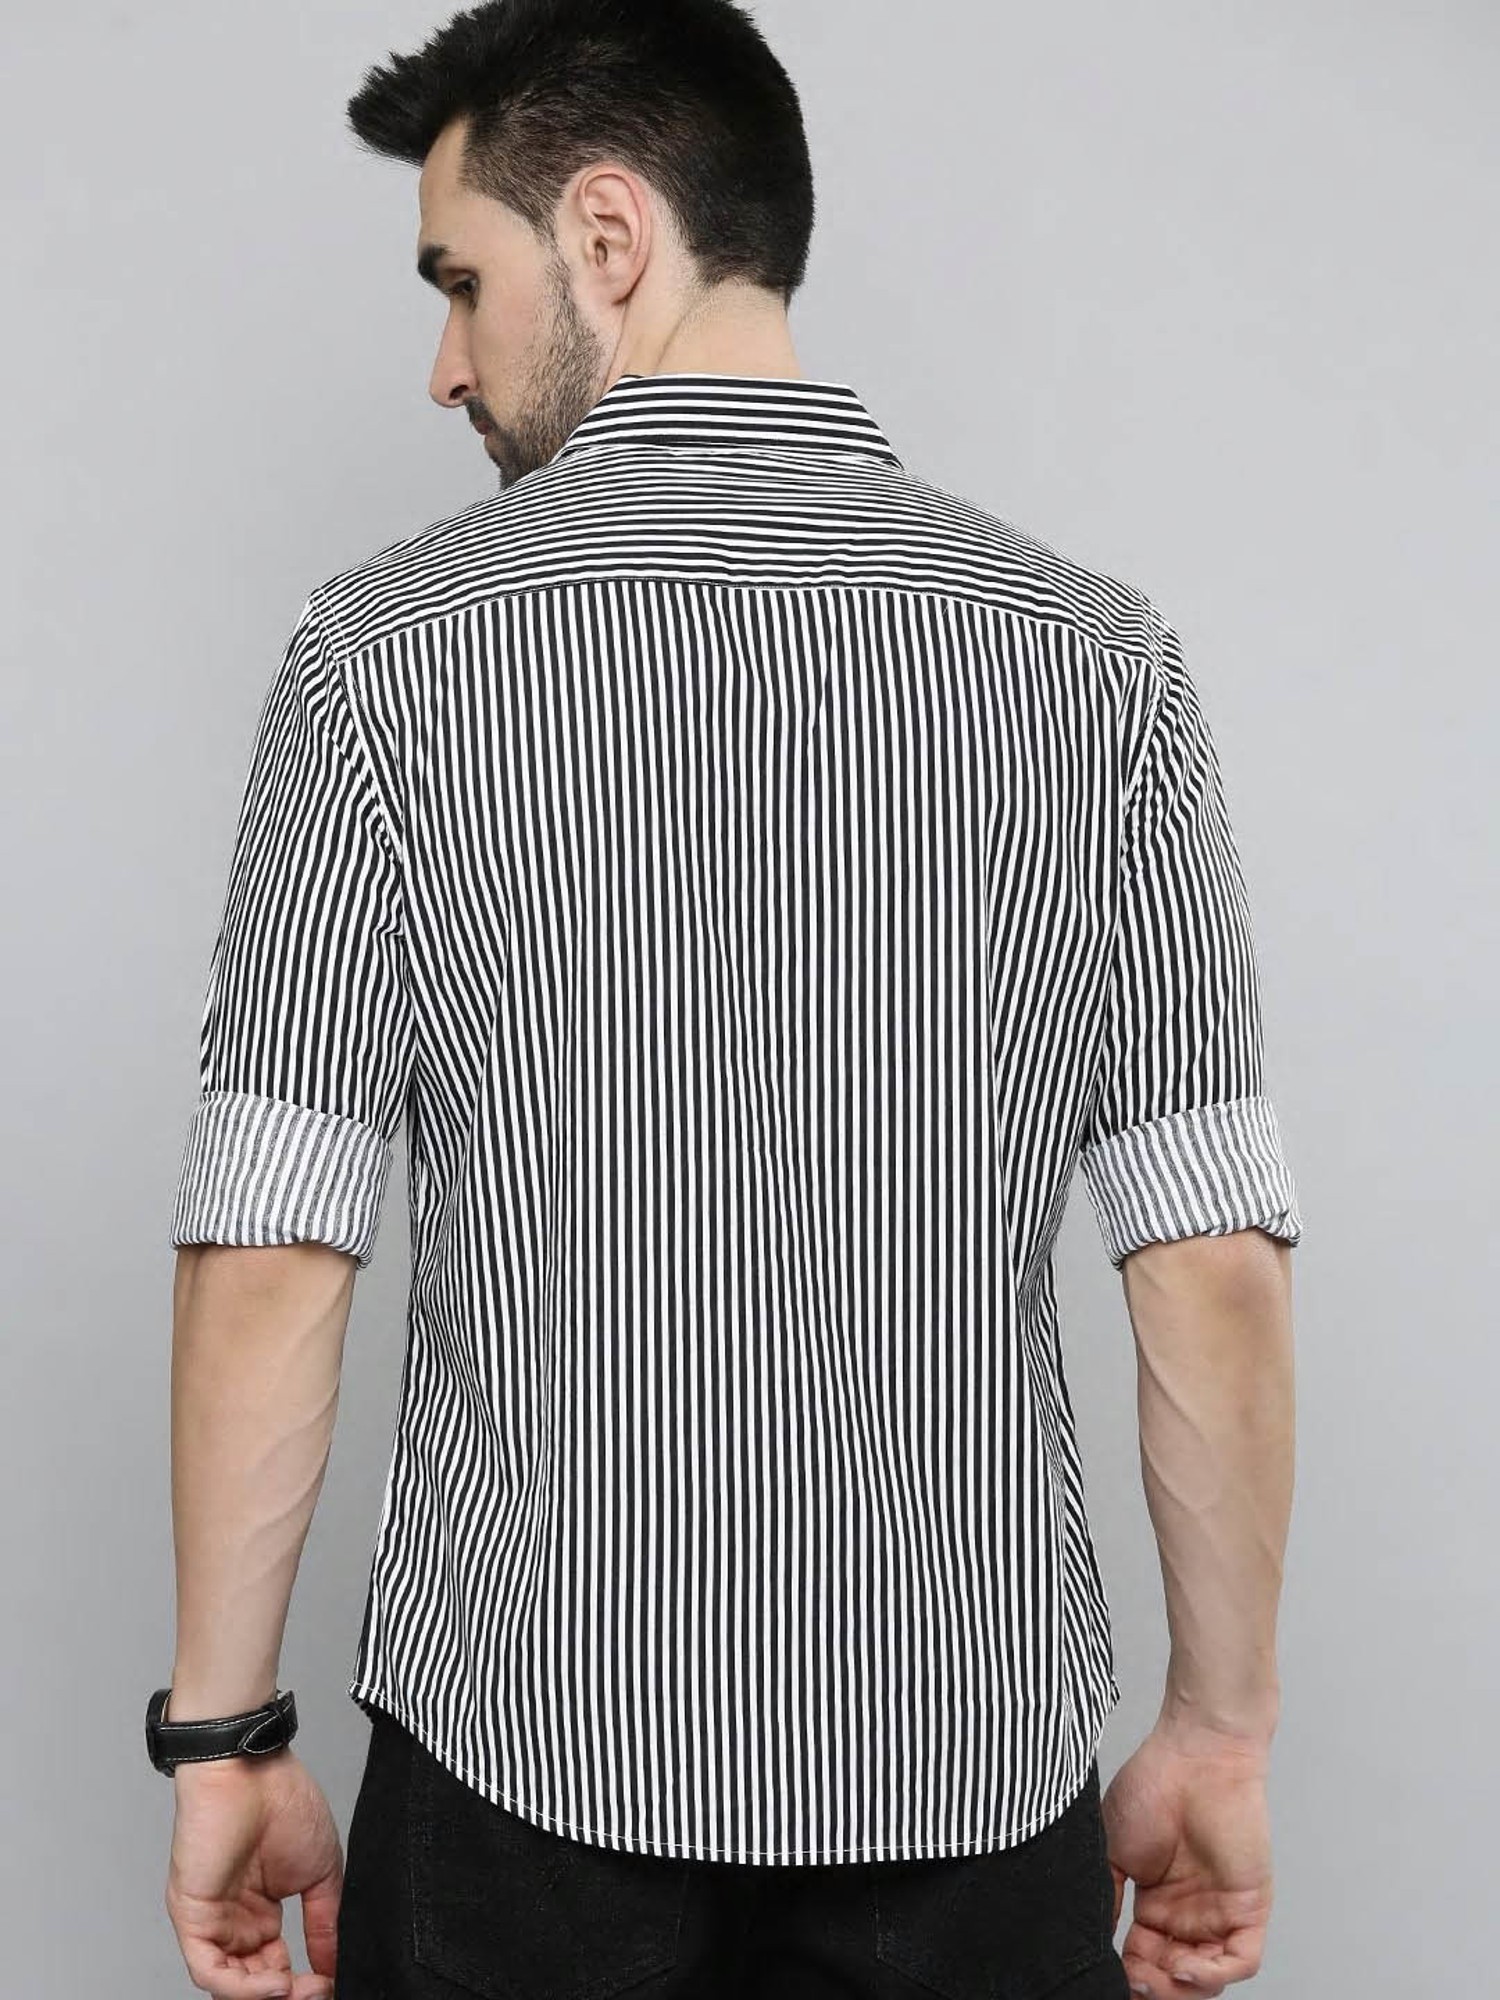 Buy Levi's Jet Black & White Striped Shirt for Men Online @ Tata CLiQ